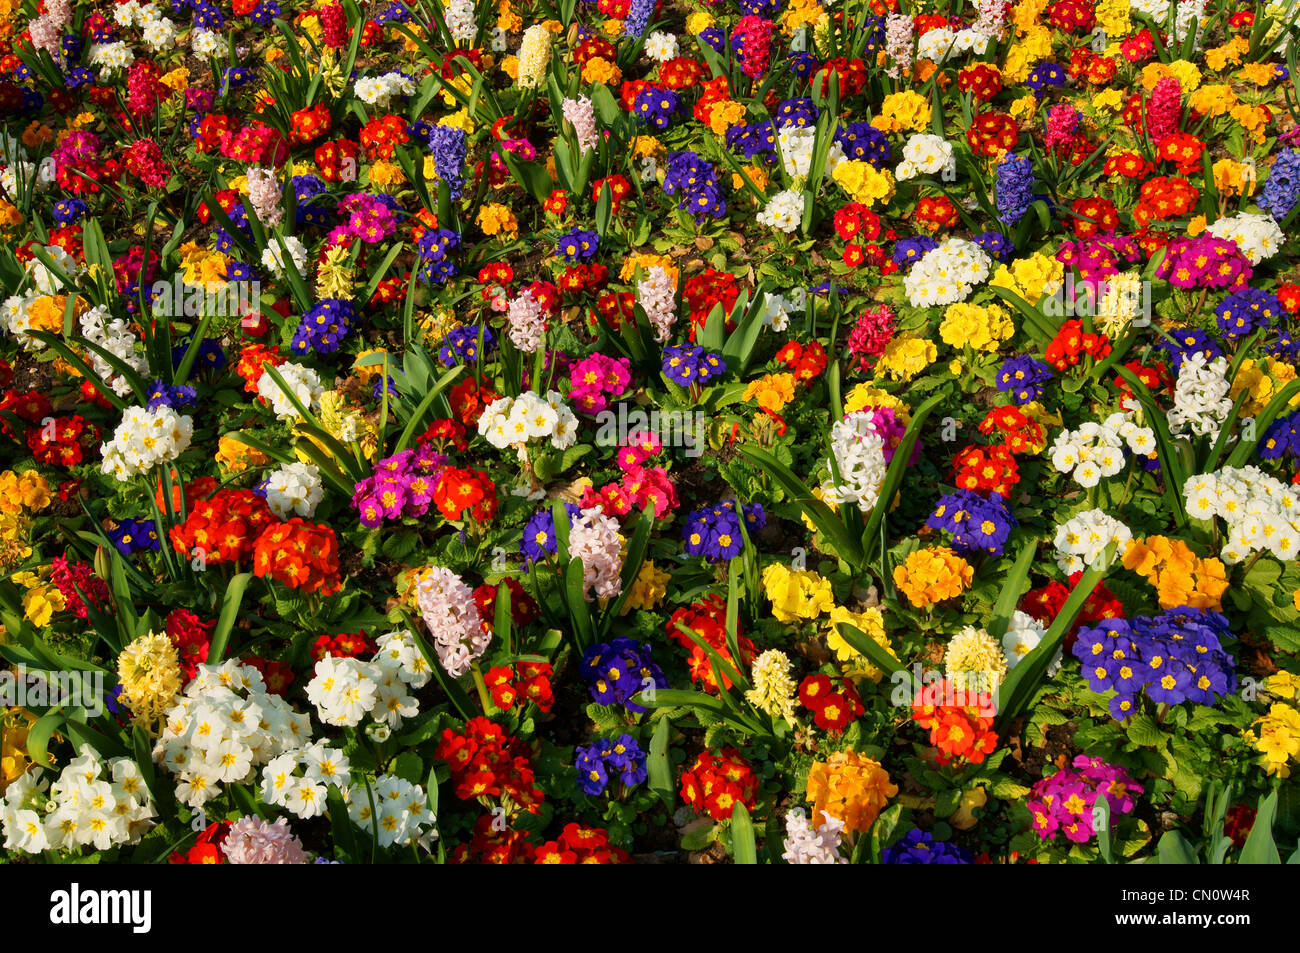 UK,Dorset,Lyme Regis,Spring Flowers Stock Photo